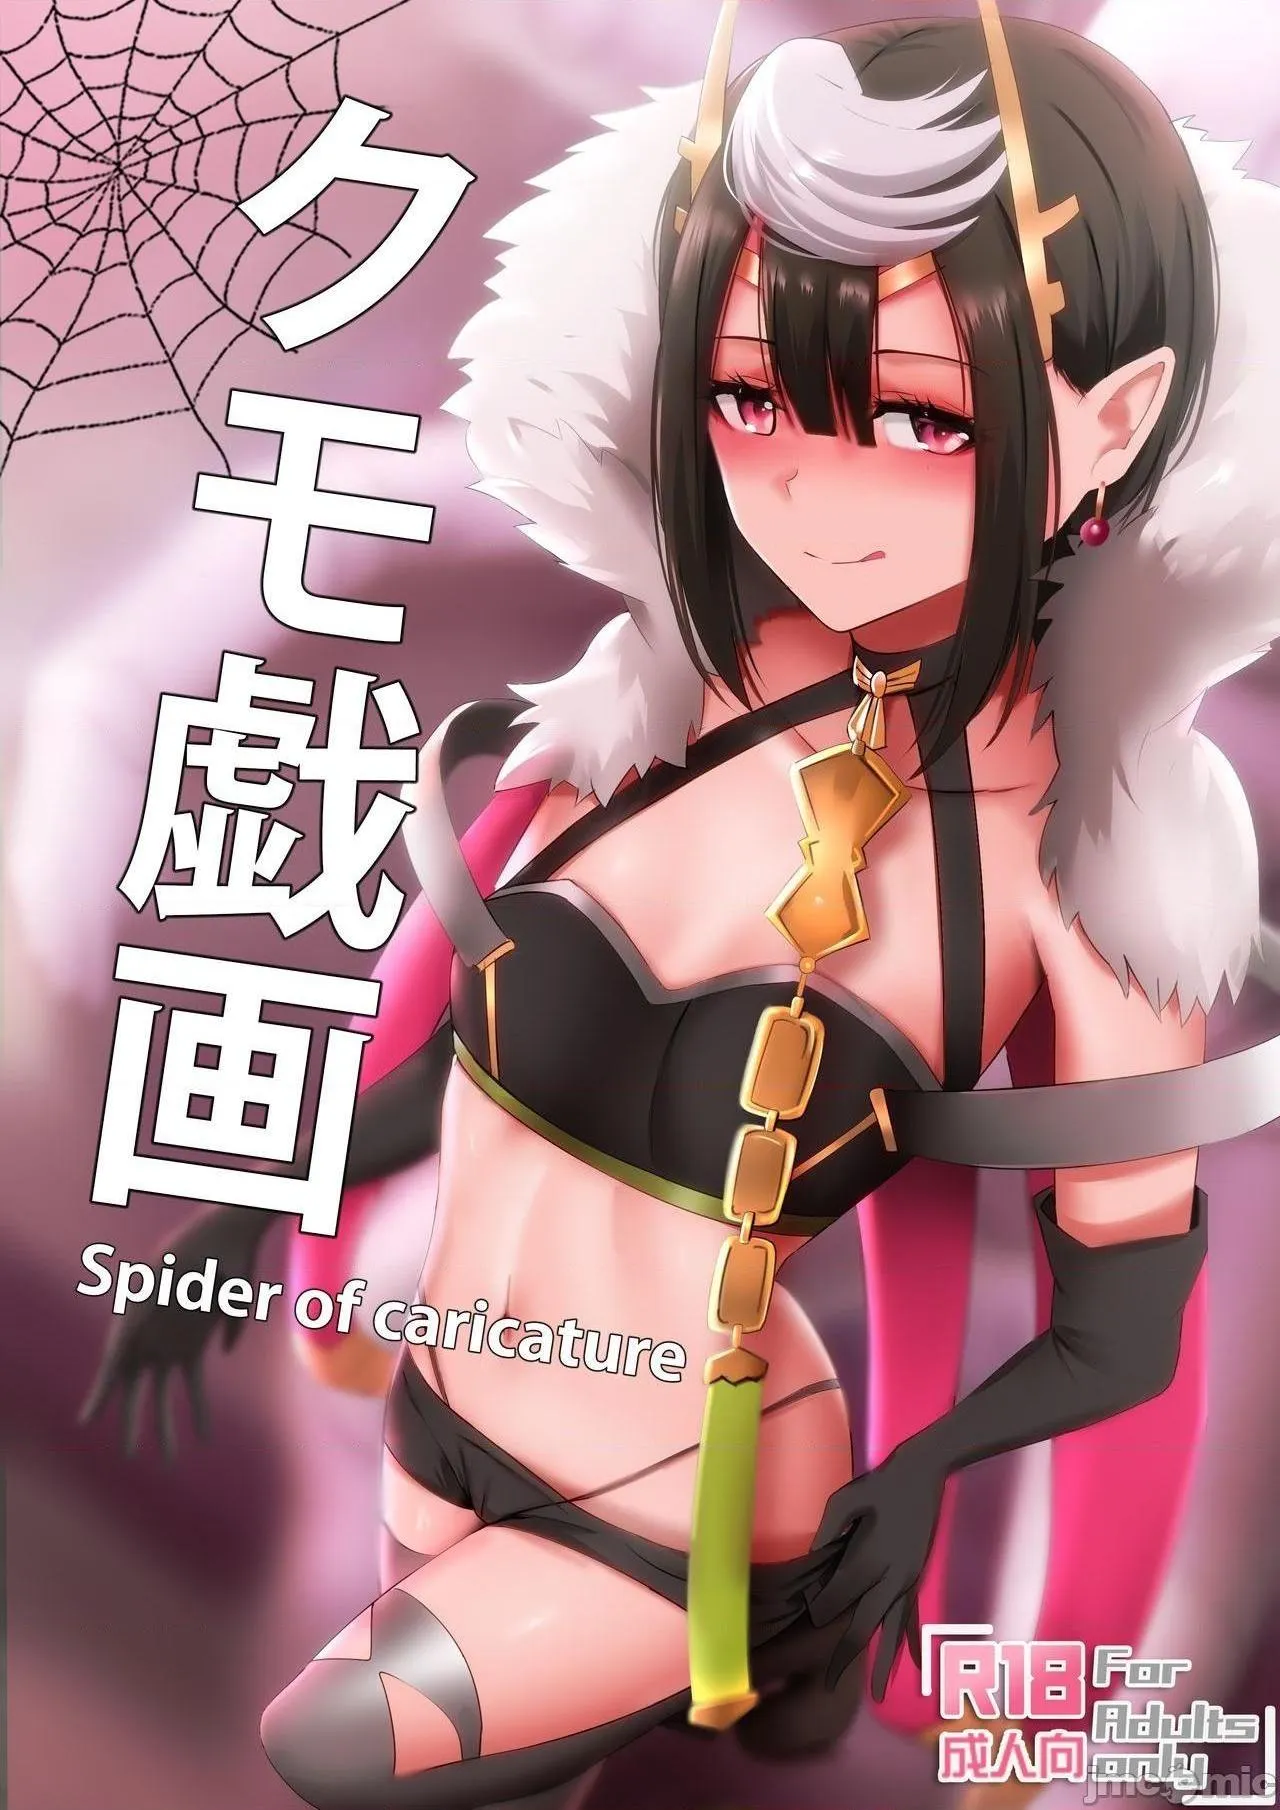 日本口工无翼彩全彩漫画クモ戯画-SpiderofCaricature(蜘蛛ですが、なにか?)